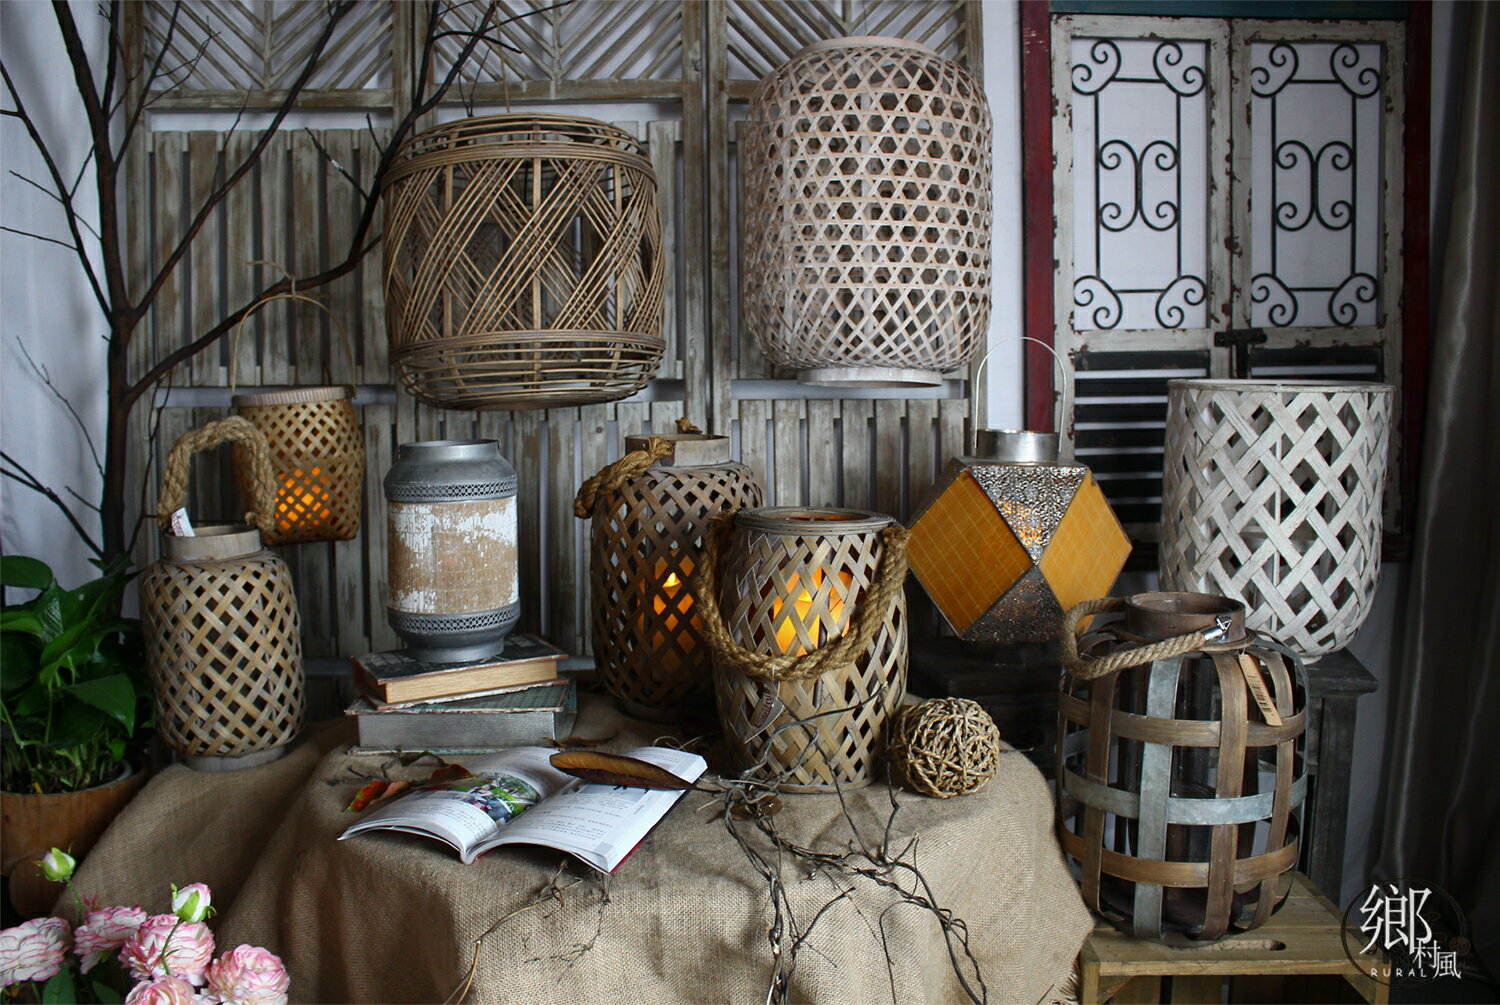 美式鄉村風格家居庭院戶外裝飾仿古做舊手工竹編鐵木工藝燈籠風燈